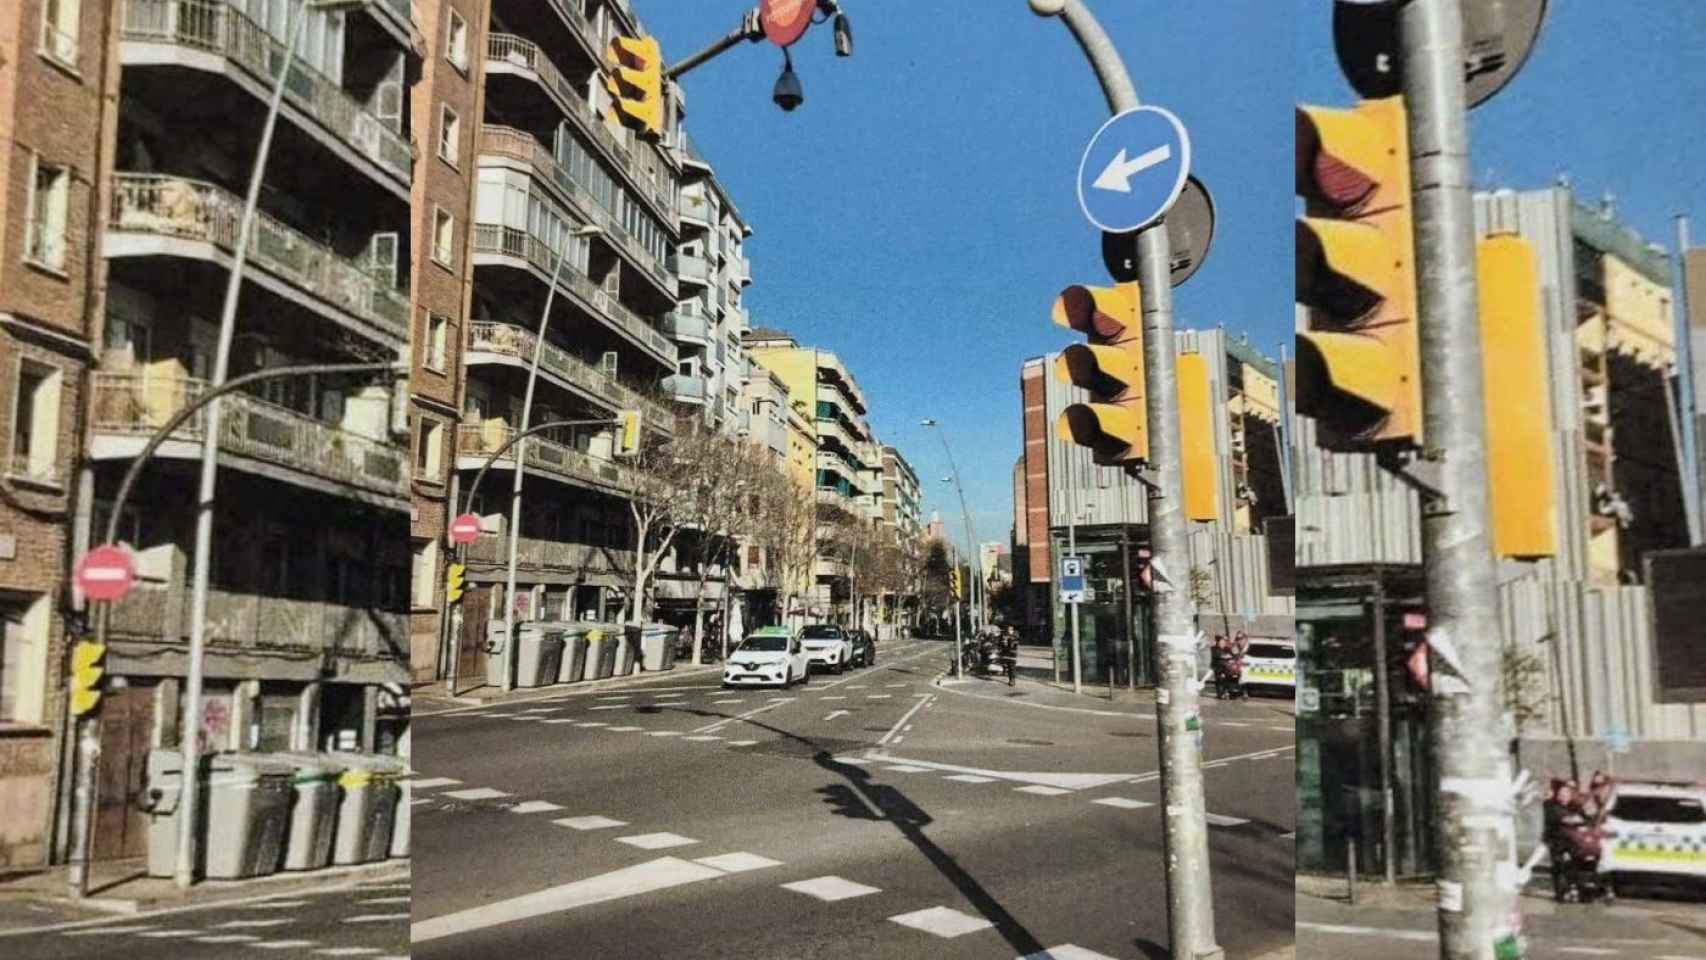 El semáforo donde un hombre se cayó al intentar romper una cámara de tráfico en L'Hospitalet / AJUNTAMENT L'HOSPITALET